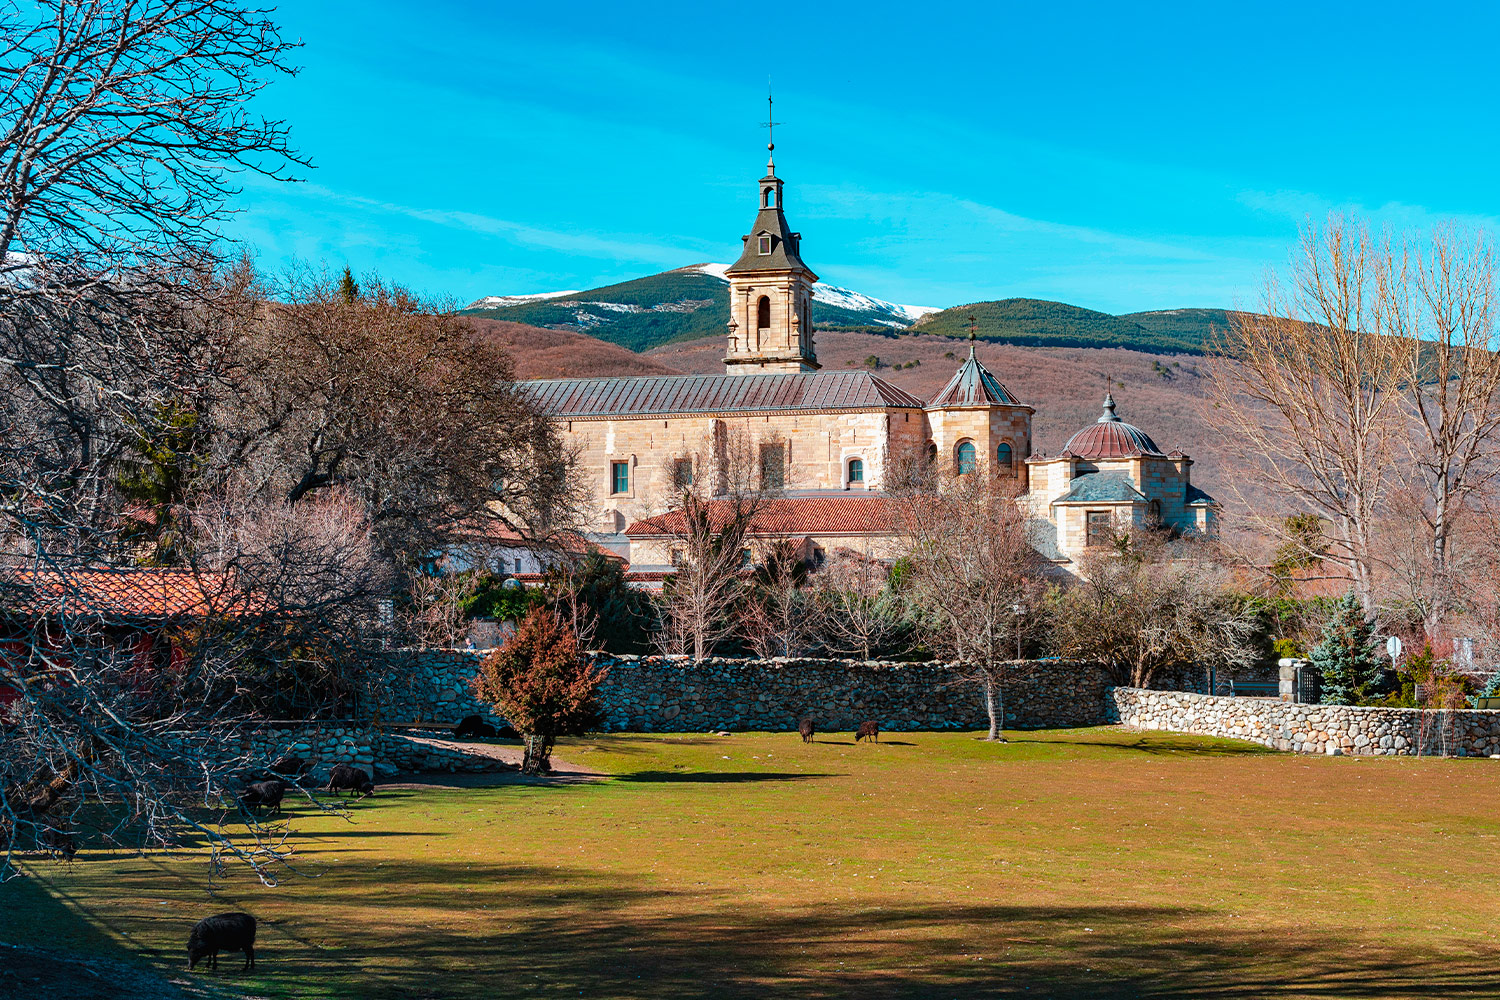 Rascafría, a fairytale location in the countryside